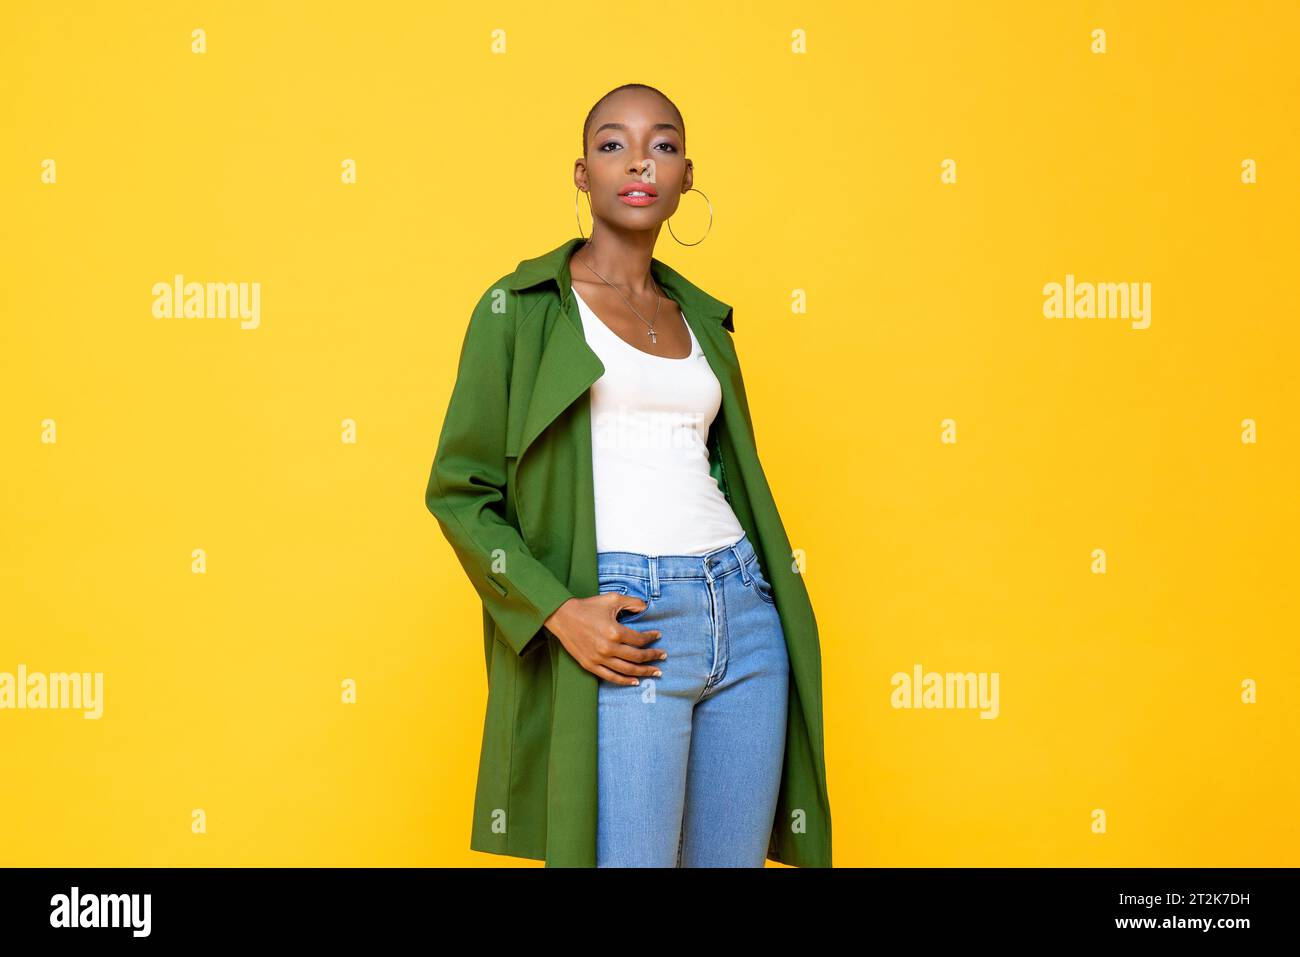 Porträt einer stilvollen, selbstbewussten afroamerikanerin der Millennials mit einem rasierten Kopf, der einen Mantel trägt und vor einem isolierten gelben Hintergrund posiert Stockfoto